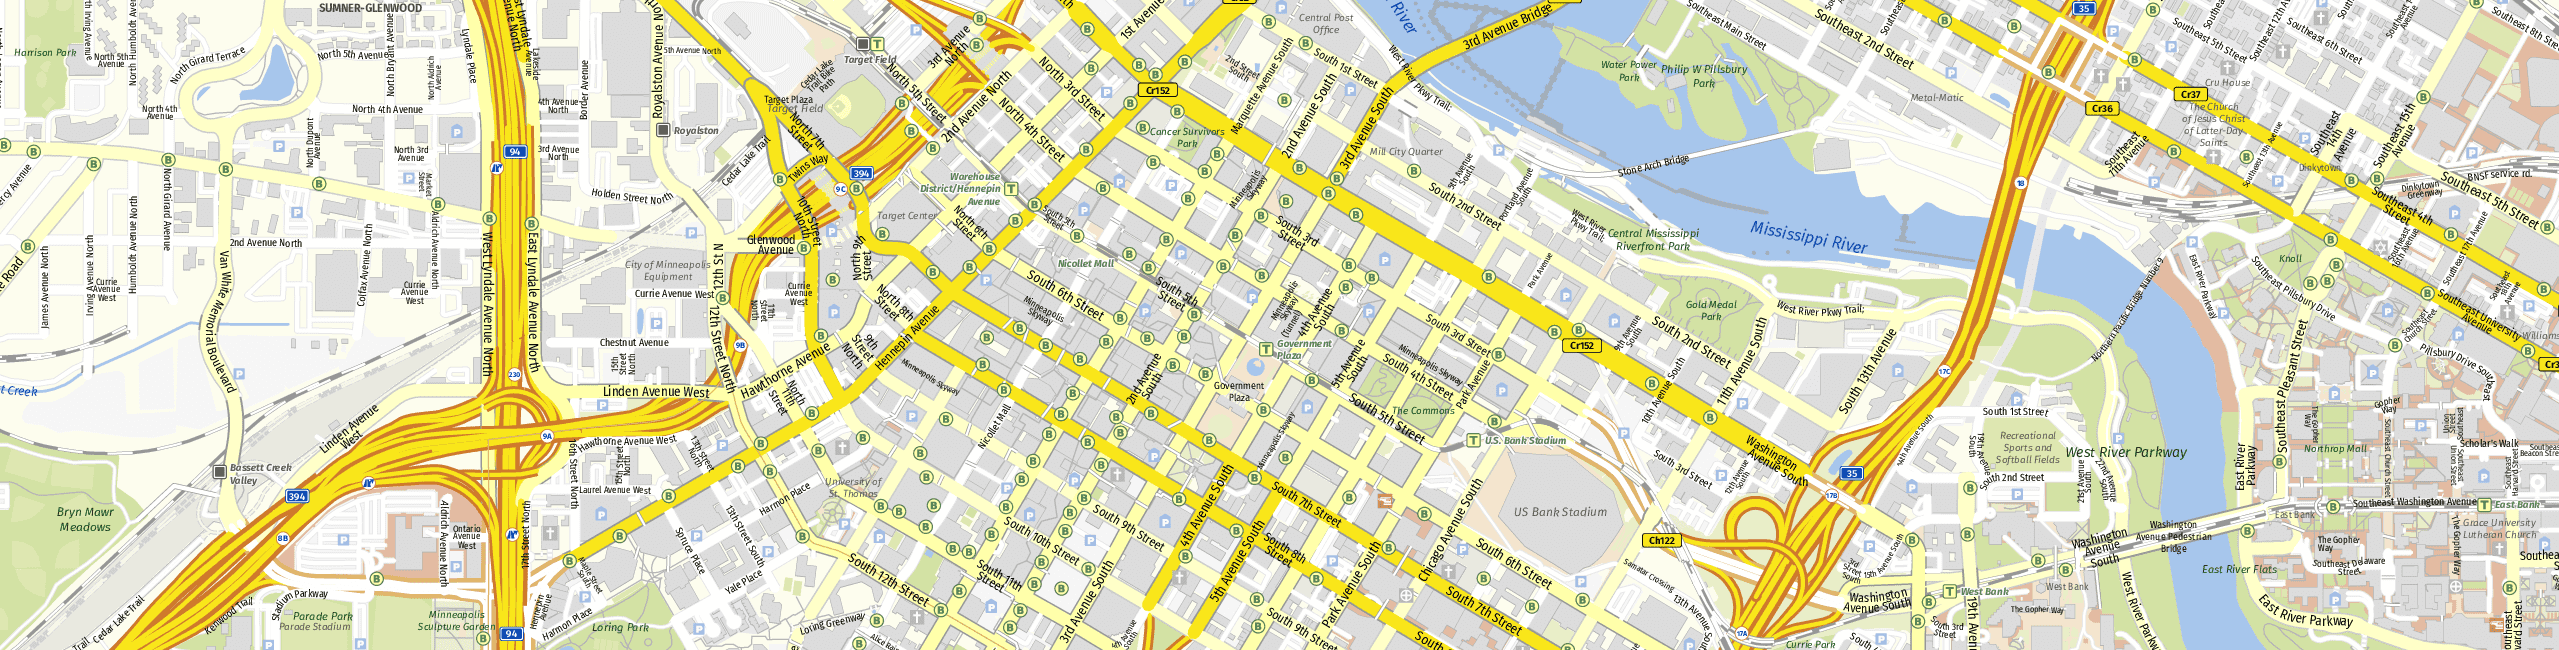 Stadtplan Minneapolis zum Downloaden.